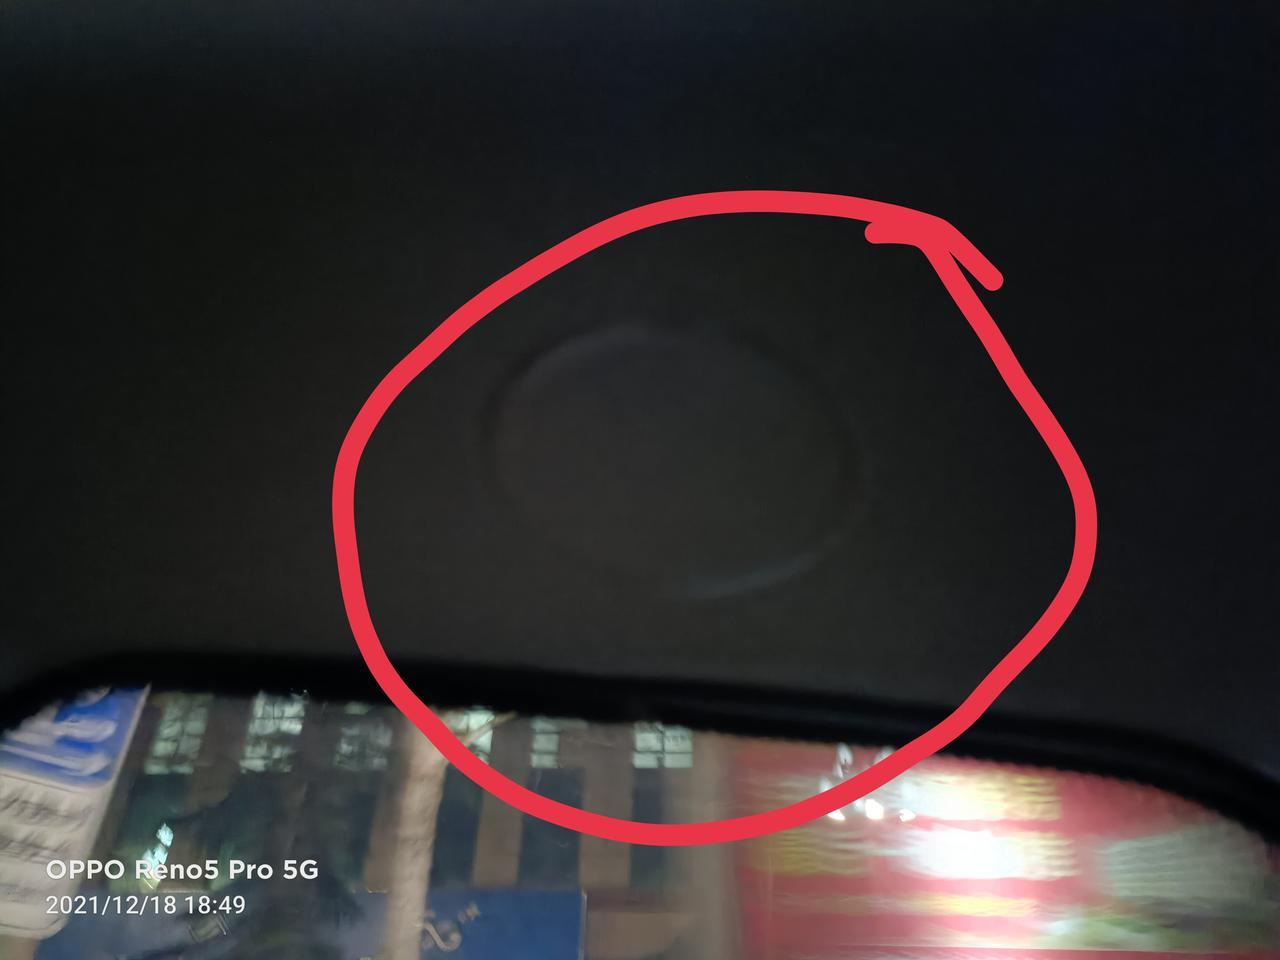 求教！有知道小蚂蚁后车窗这的这个小圆圈⭕是干啥的吗？